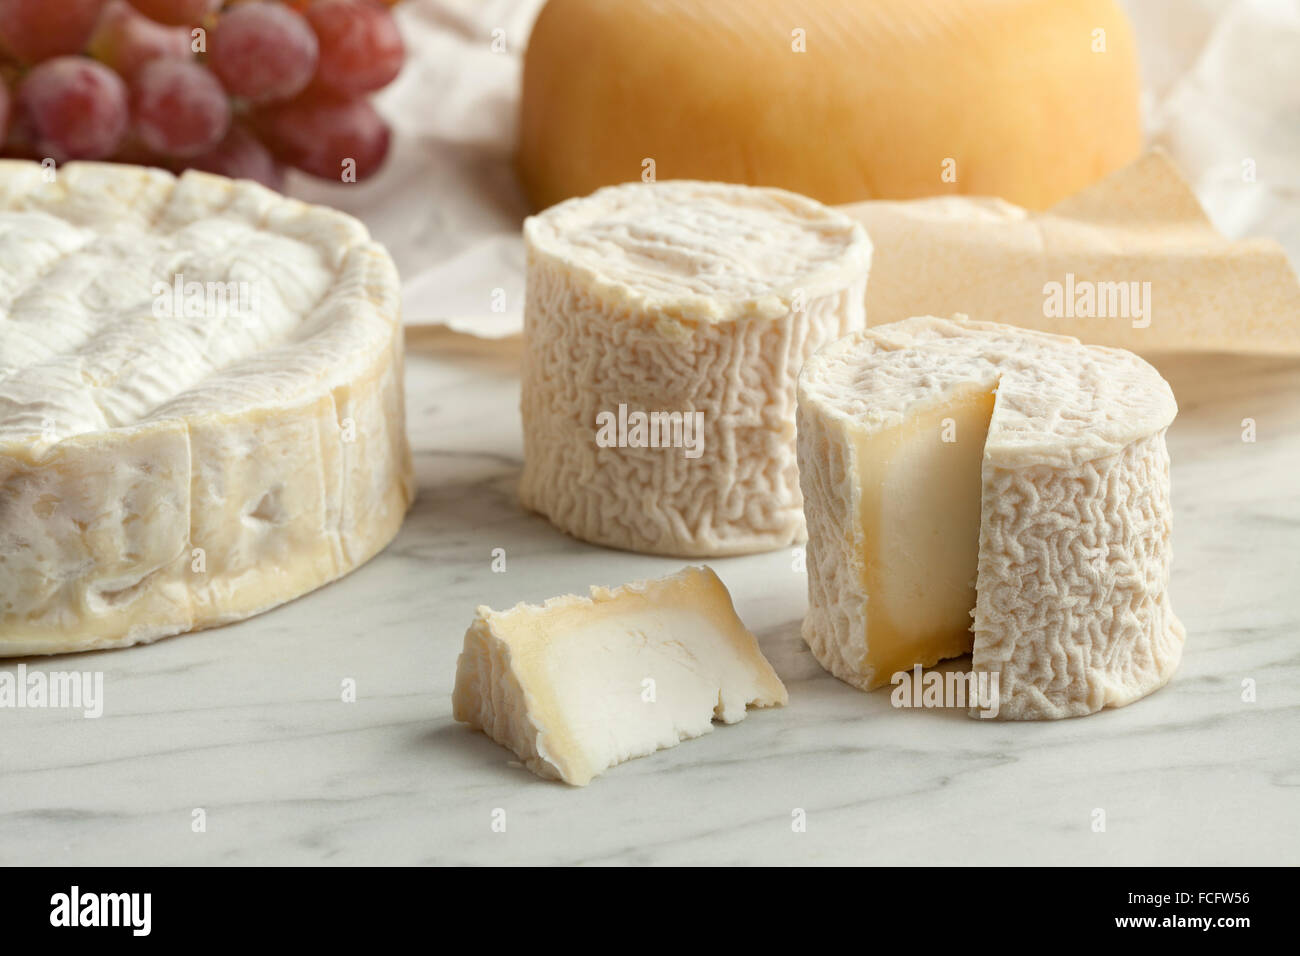 Tabla de quesos franceses con camembert, queso de cabra y las uvas como postre. Foto de stock